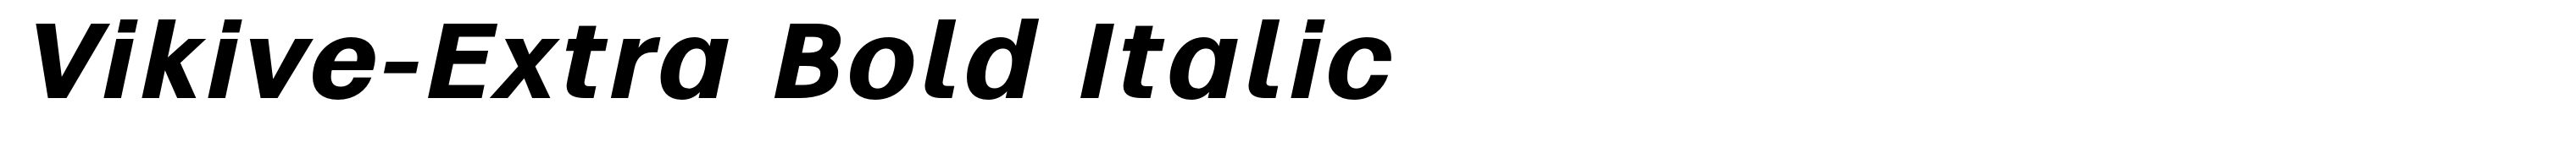 Vikive-Extra Bold Italic